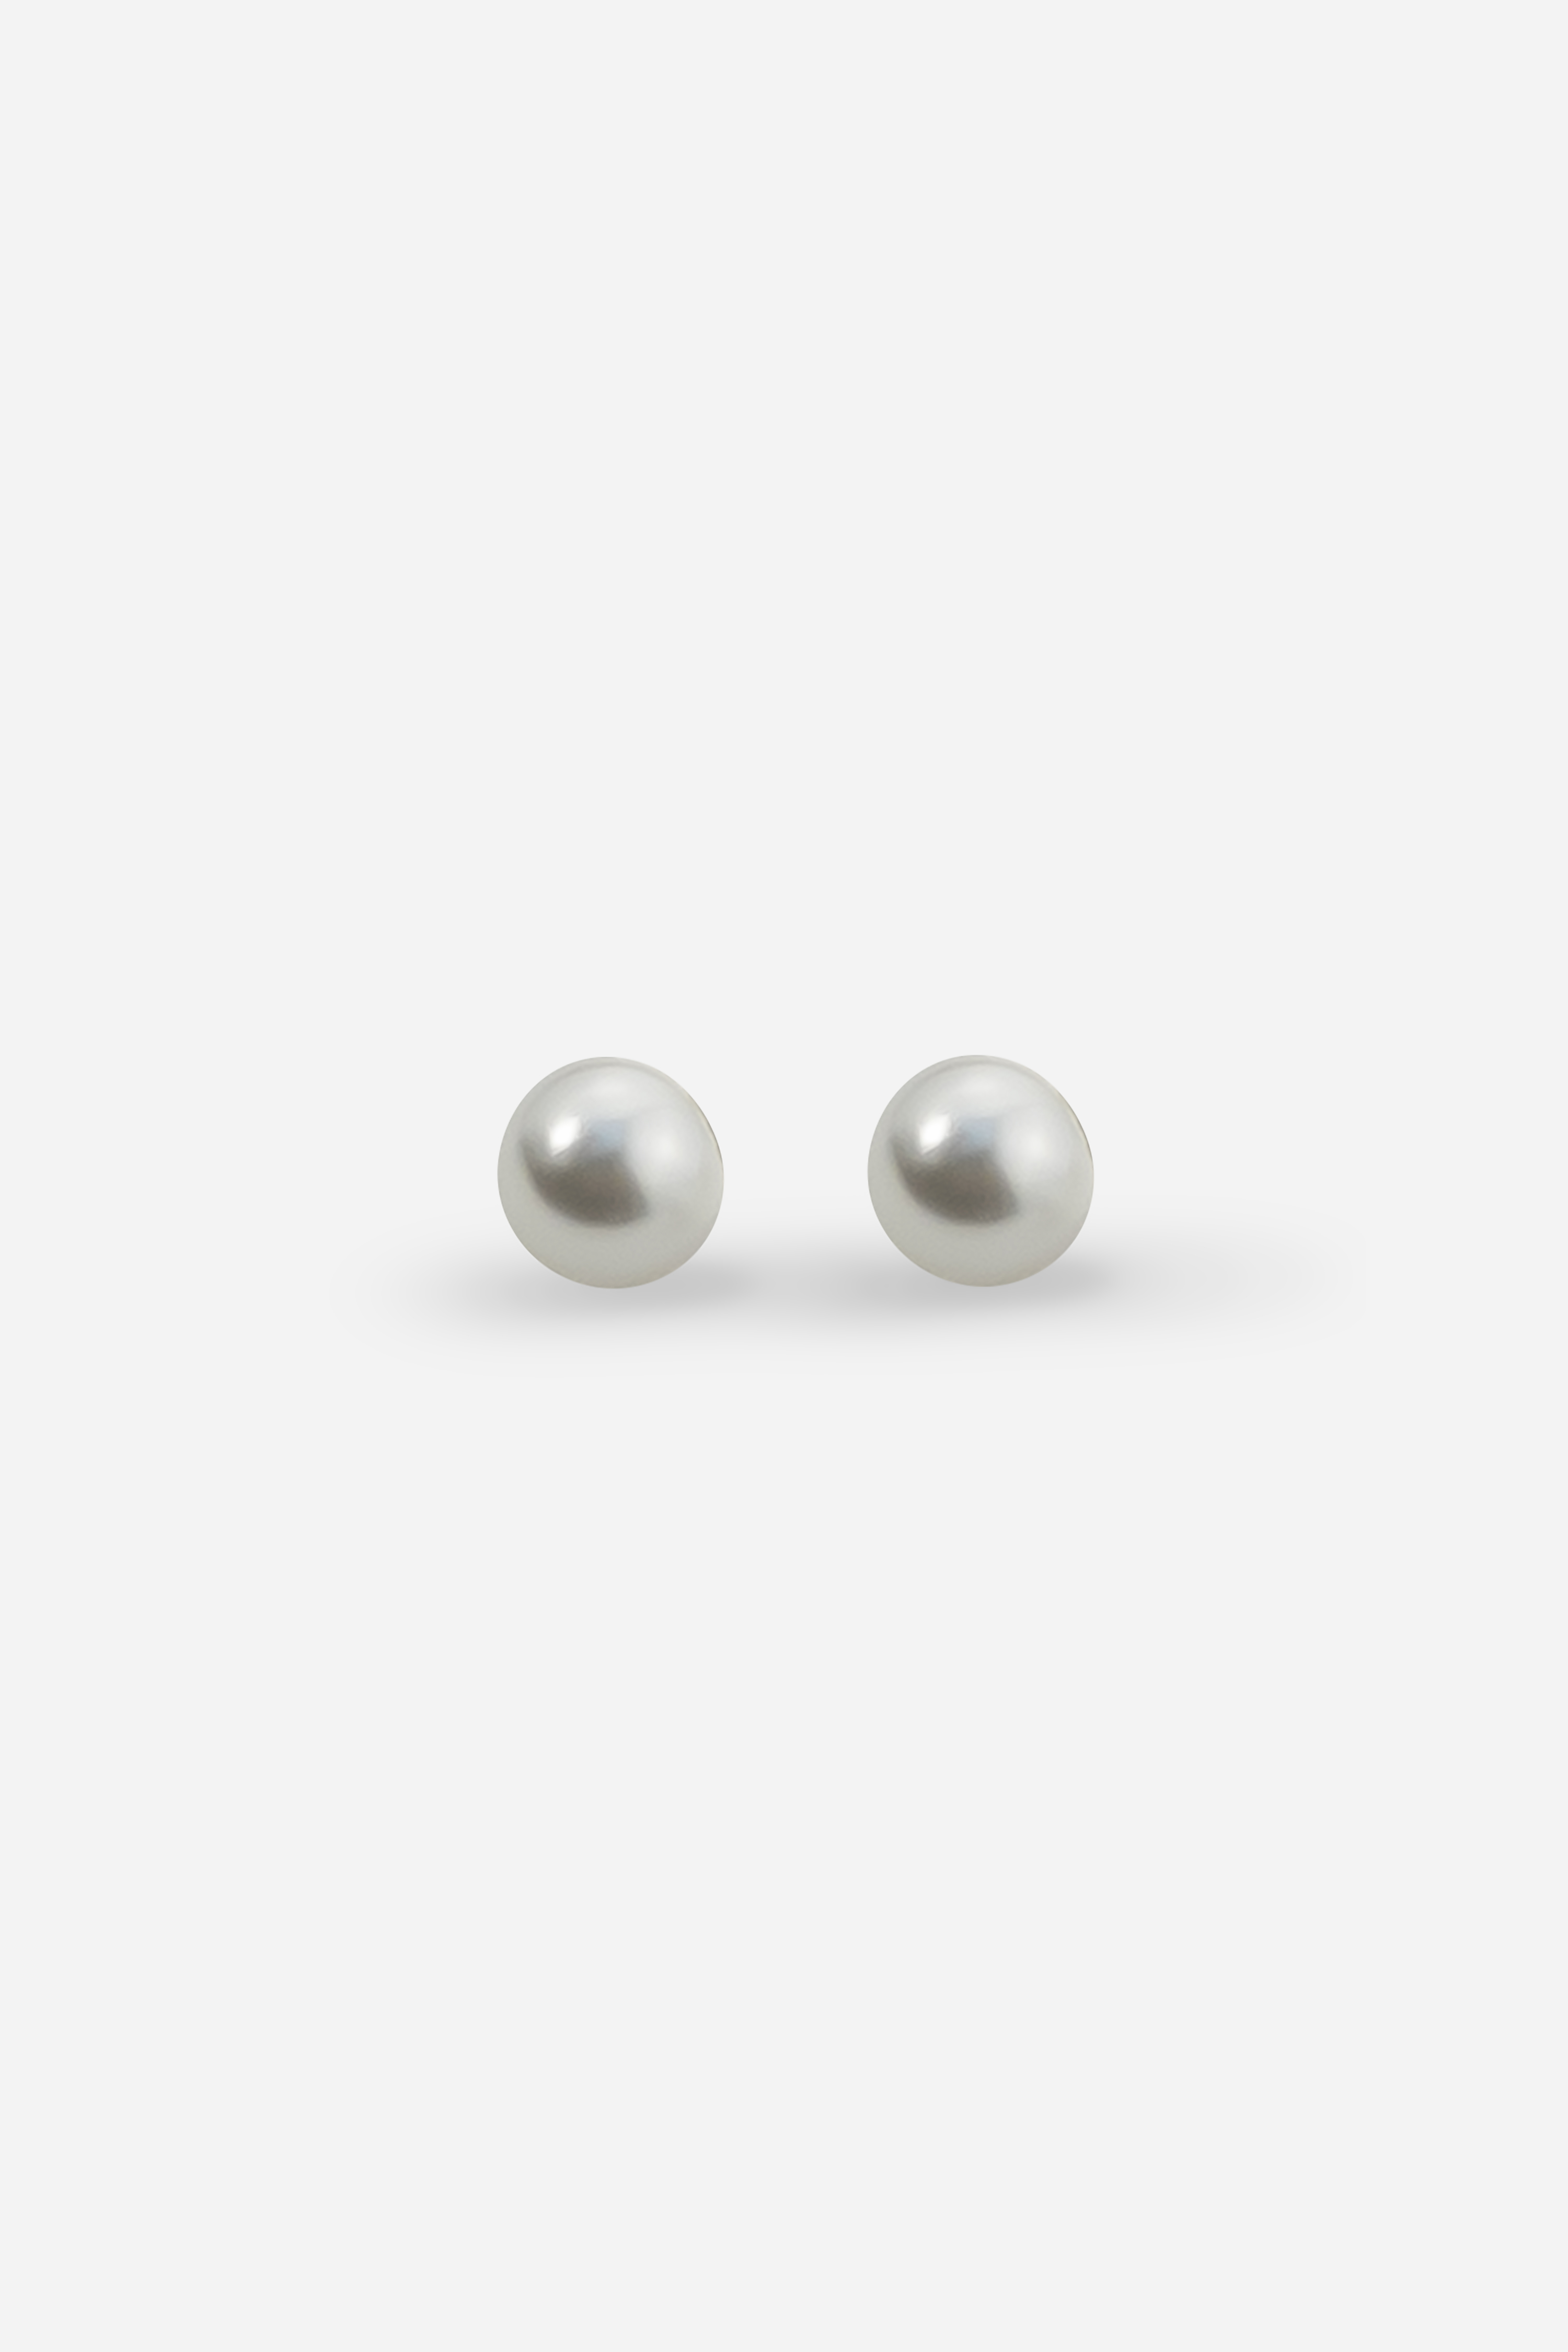 8mm Faux Pearl Sterling Silver Stud Earrings